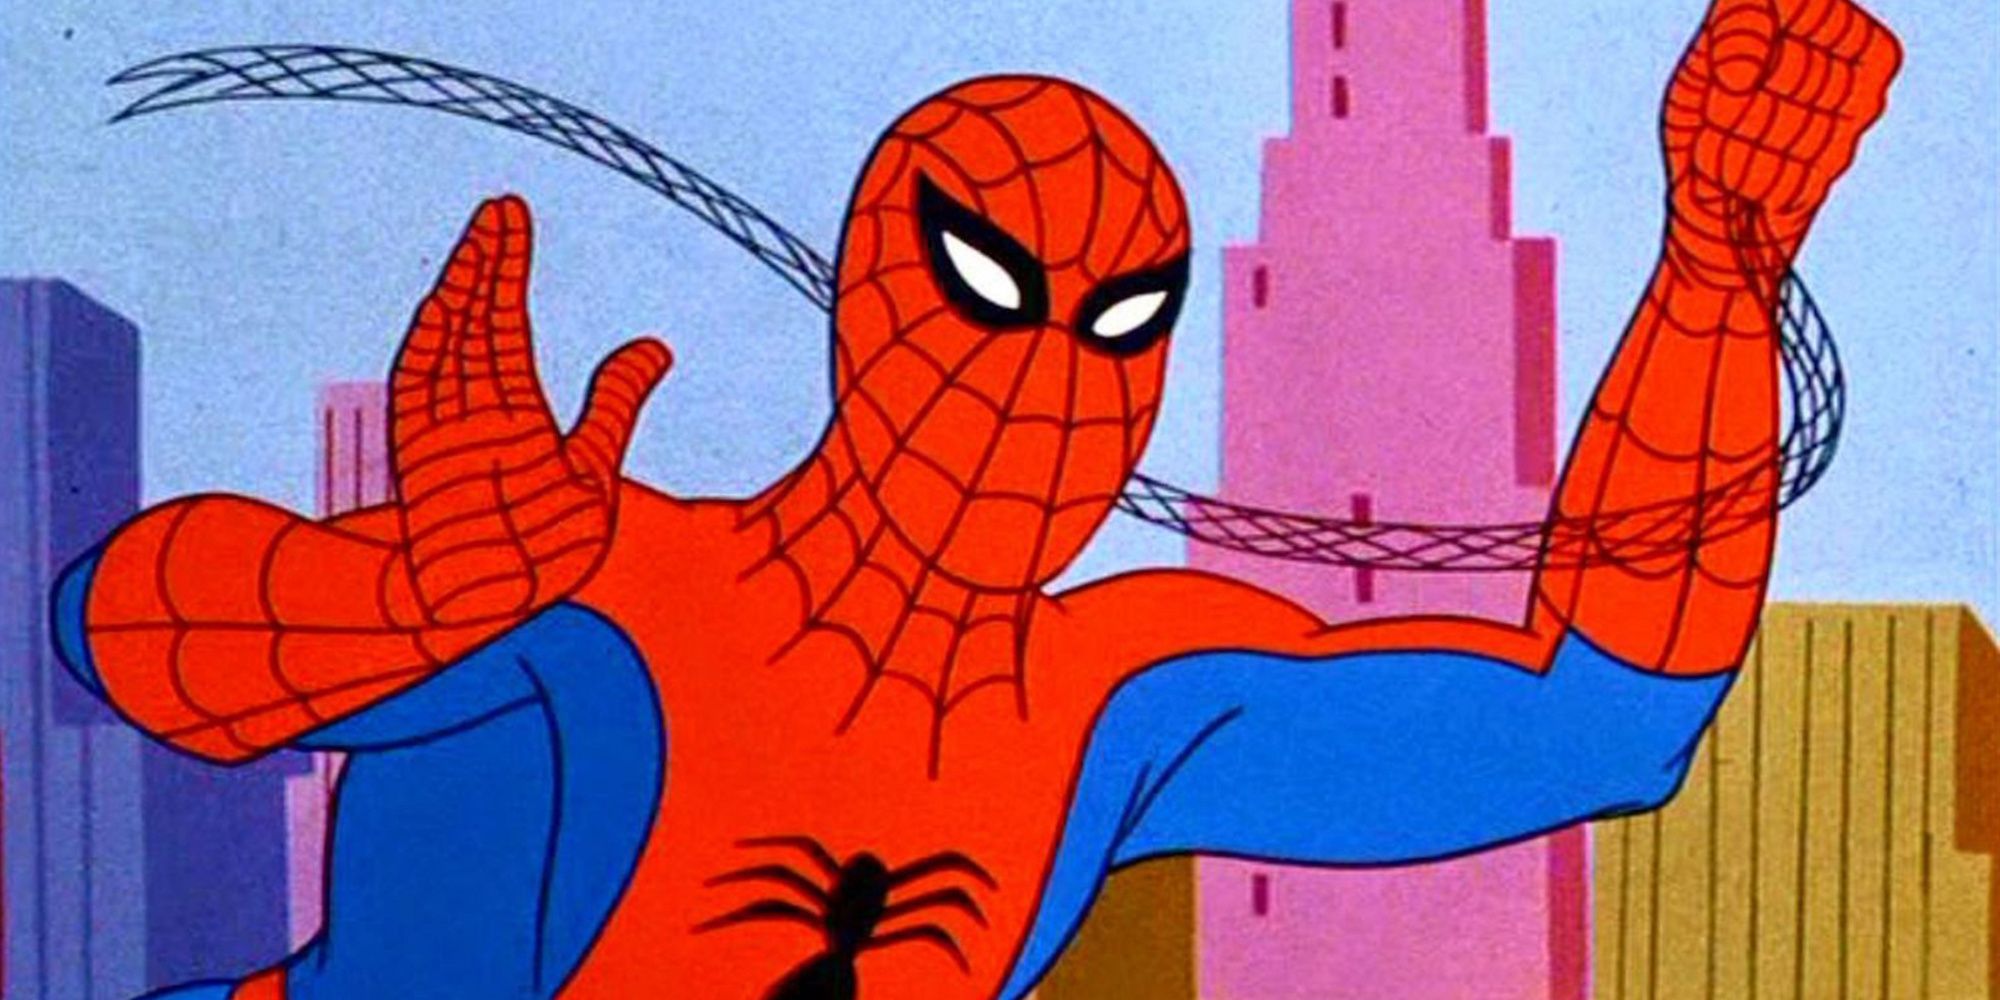 Spider-Man in the Spider-Man 60s cartoon